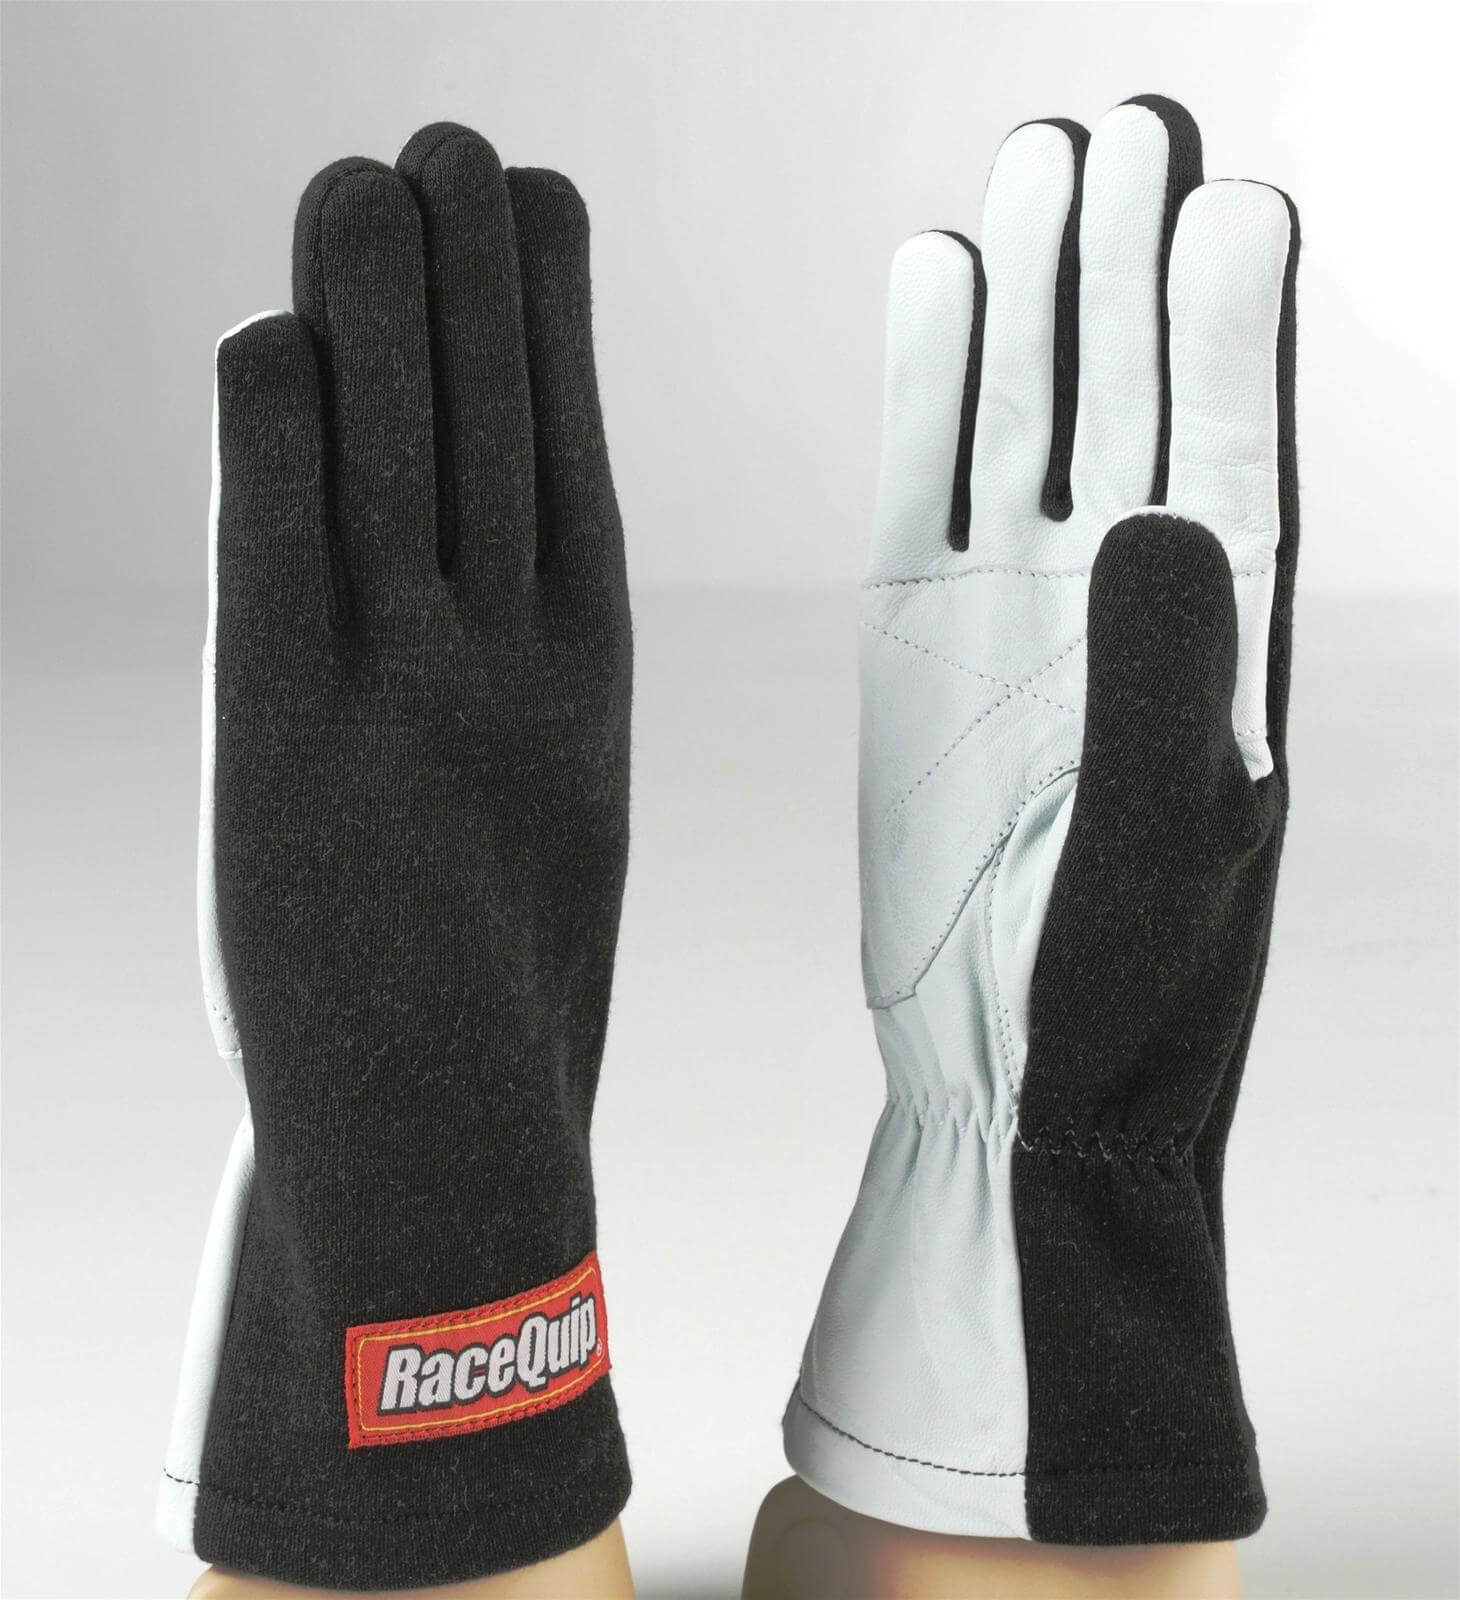 350 Gloves - $40.95